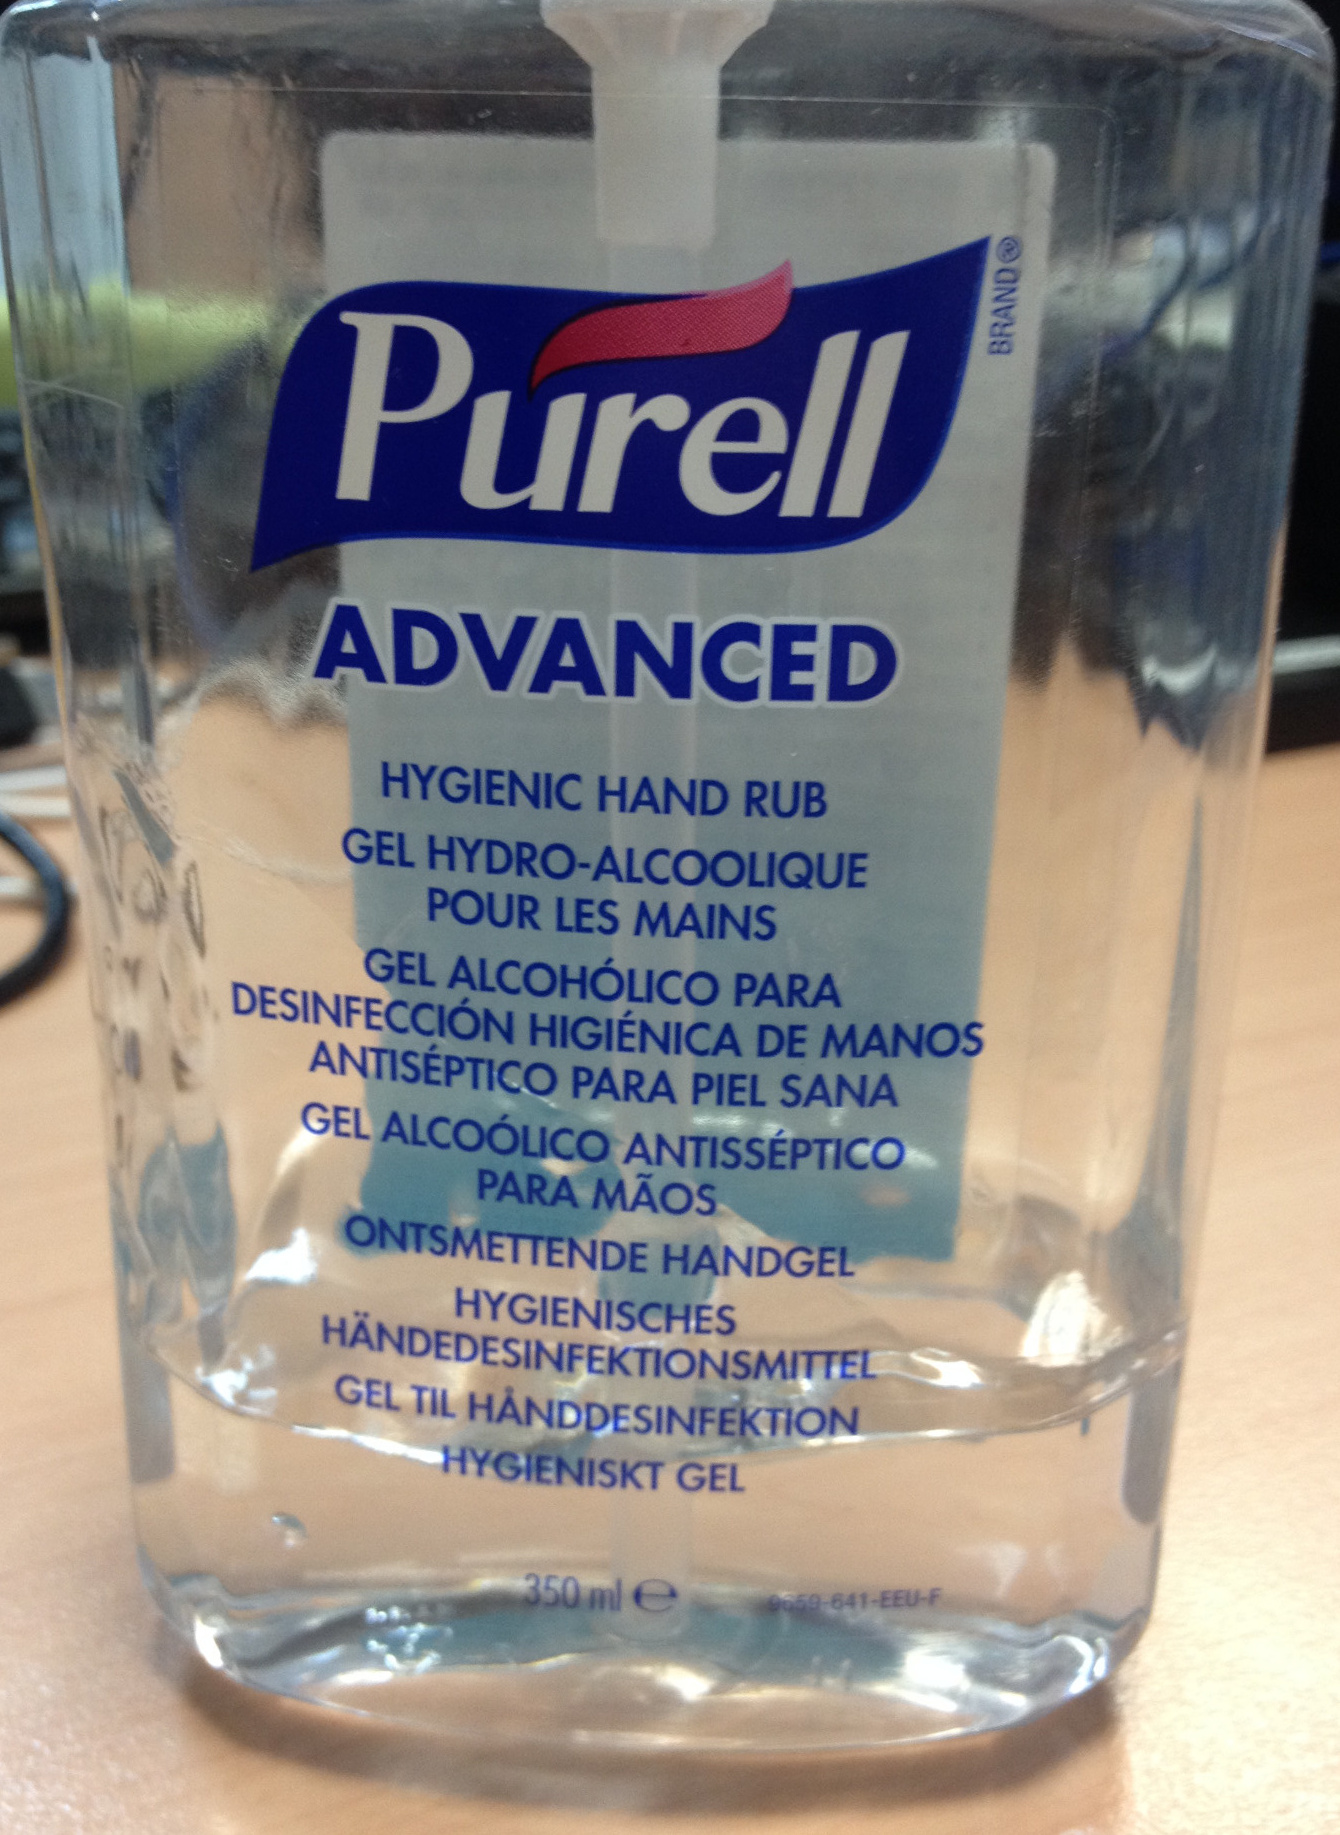 Advanced Gel hydro-alcoolique pour les mains - Product - fr